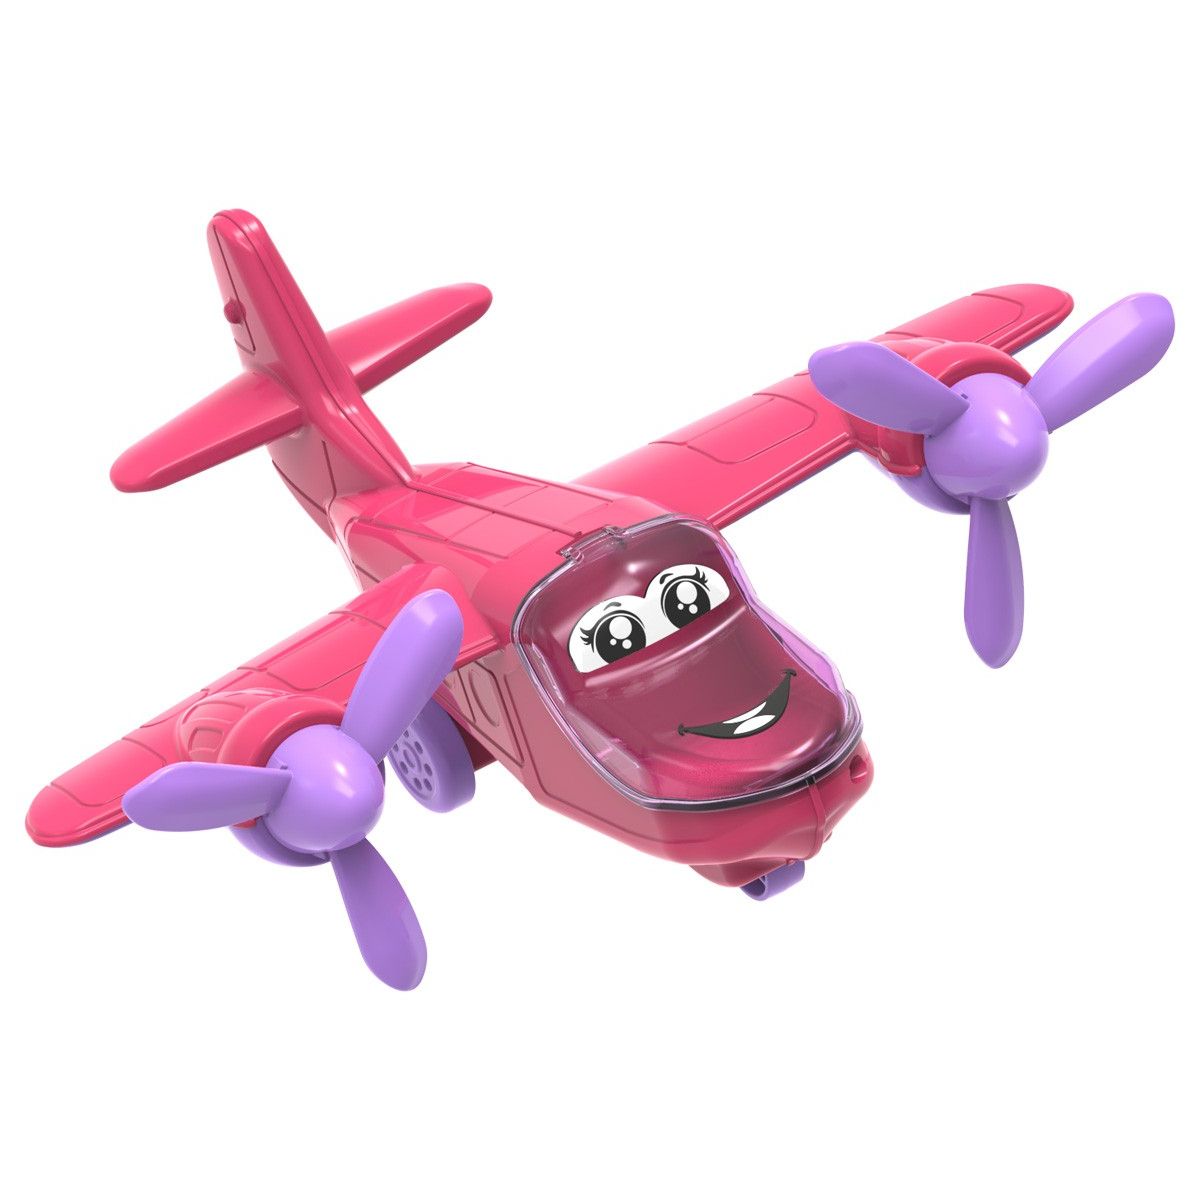 Пластикова іграшка "Літак" (рожевий)